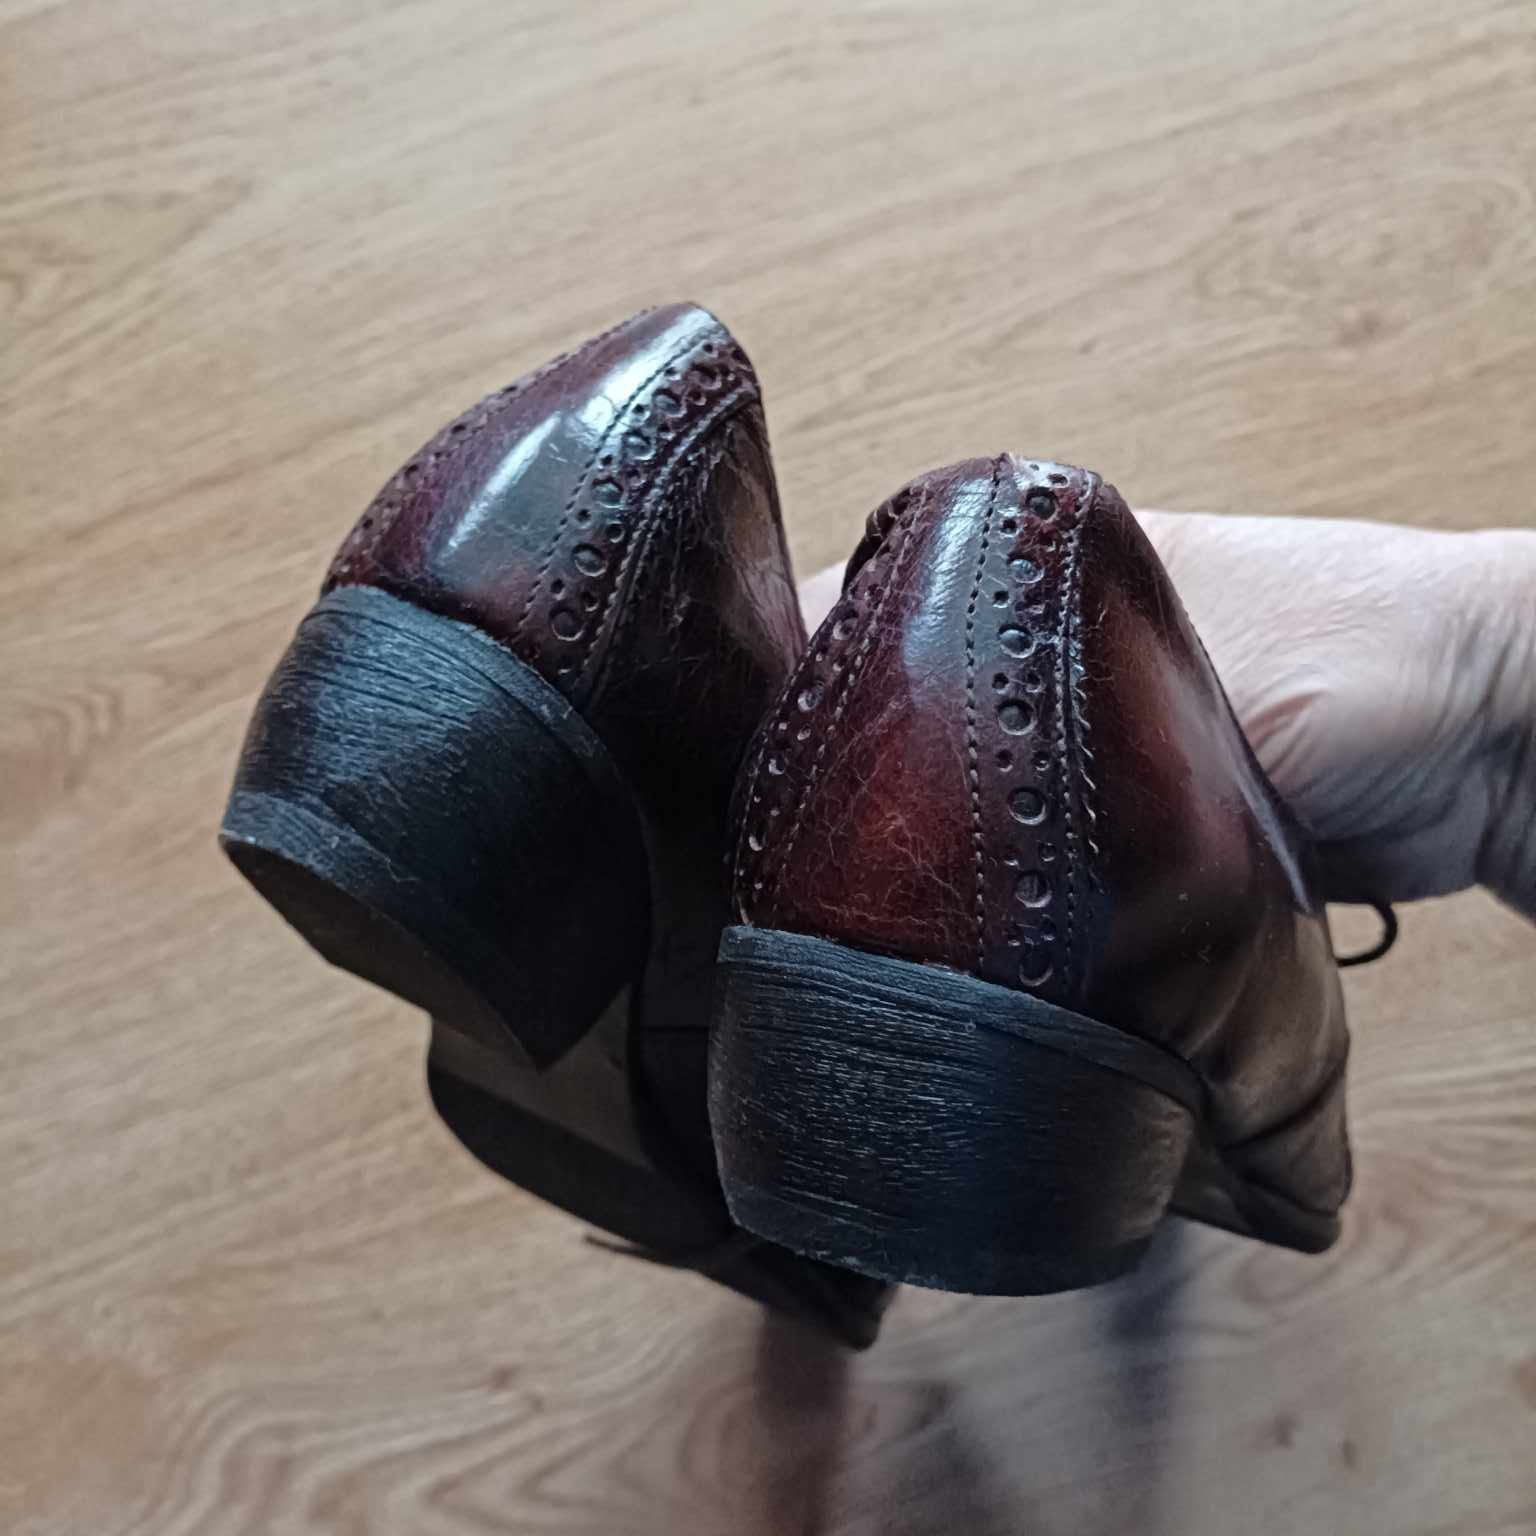 90A. Pantofle damskie rozmiar 40 firmy Baldaccini